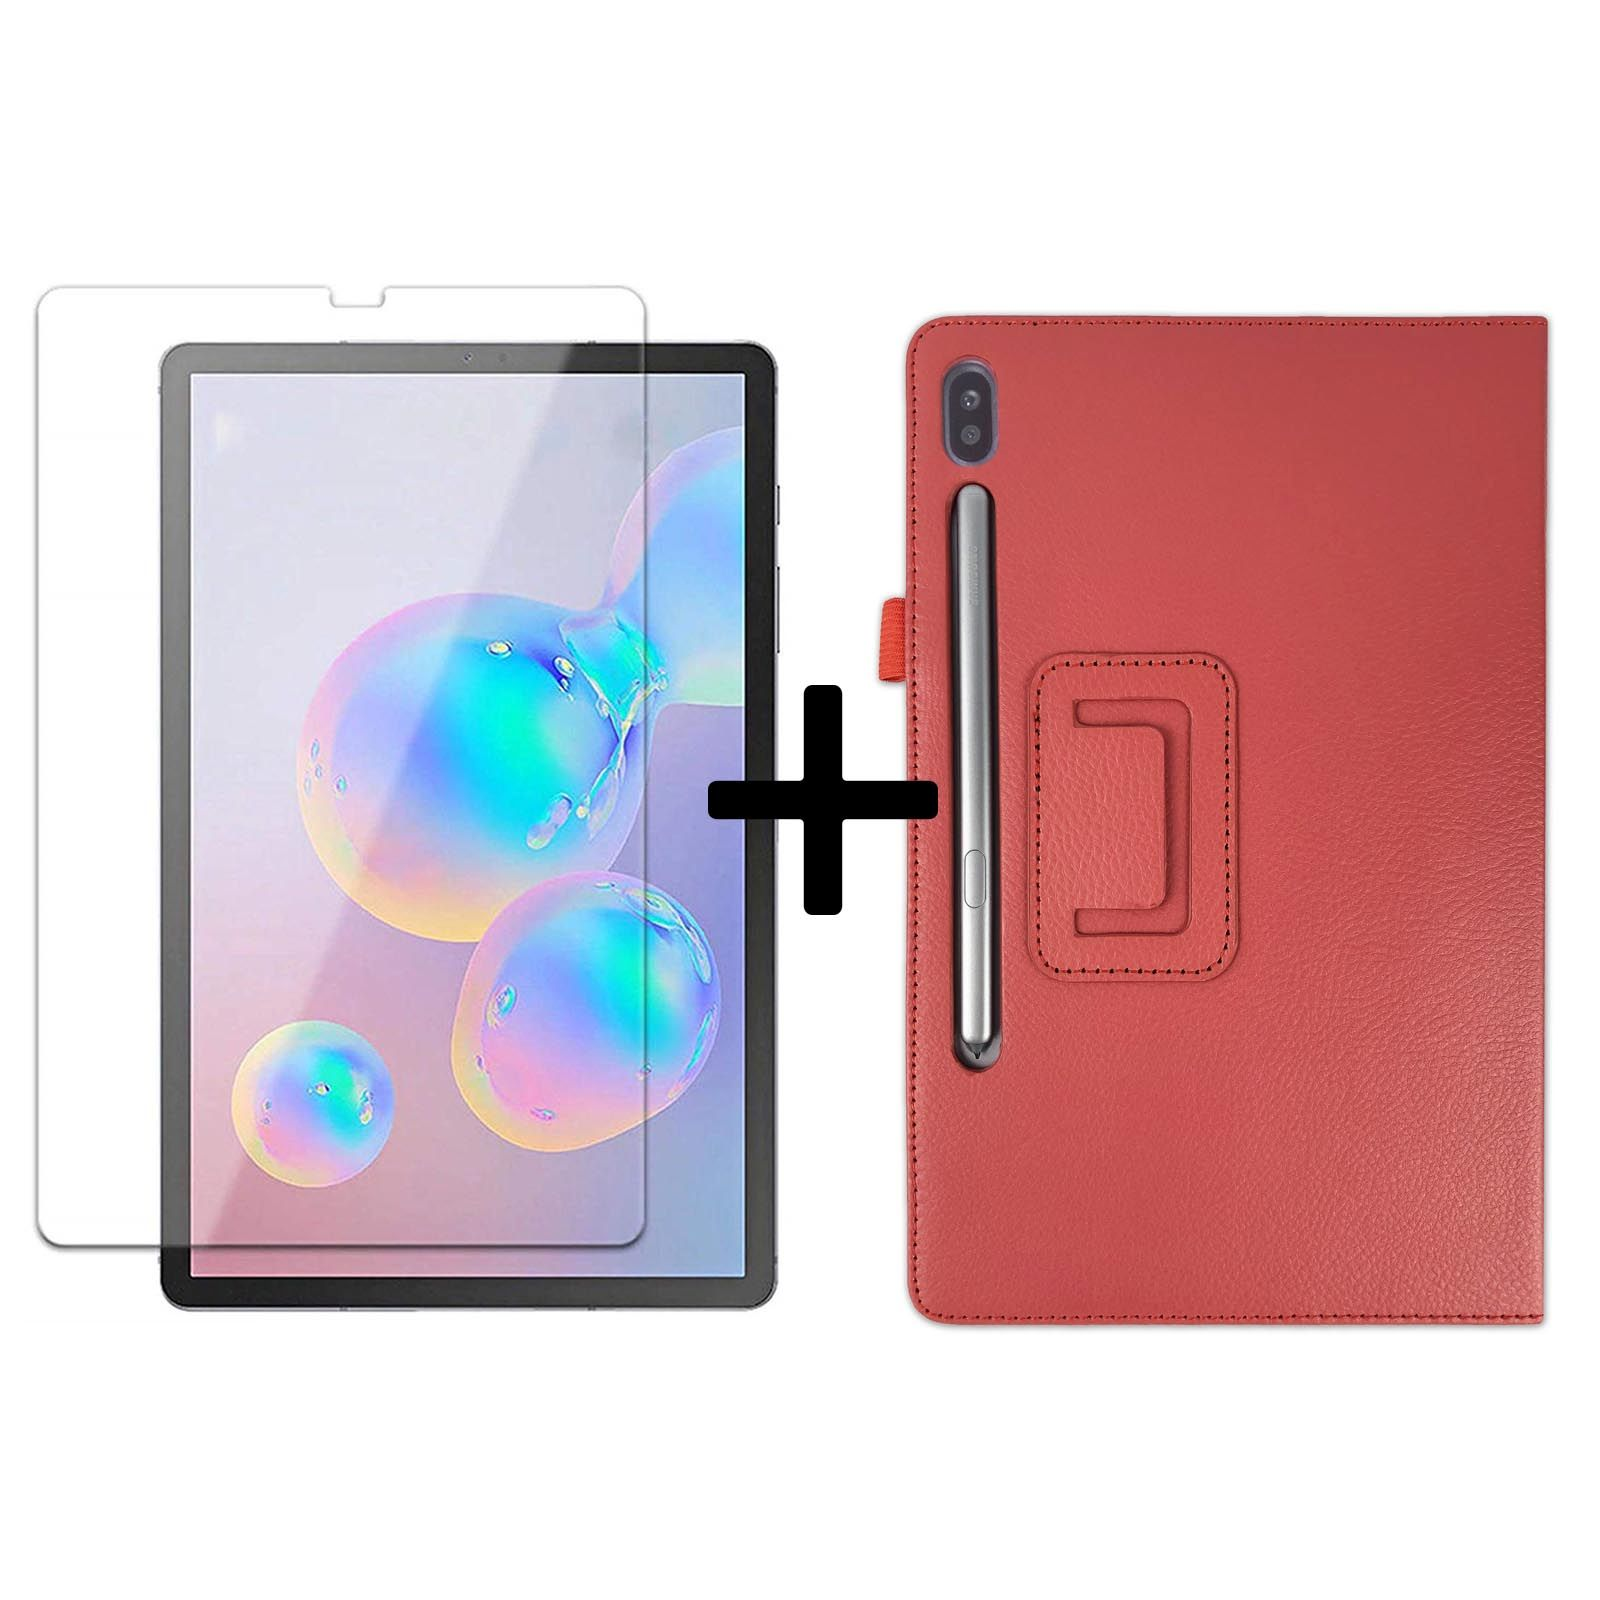 LOBWERK 2in1 Set Case SM-T865 für Schutzglas) + Samsung S6 Galaxy Rot Tab Bookcover SM-T860 10.5 (Schutzhülle Kunstleder